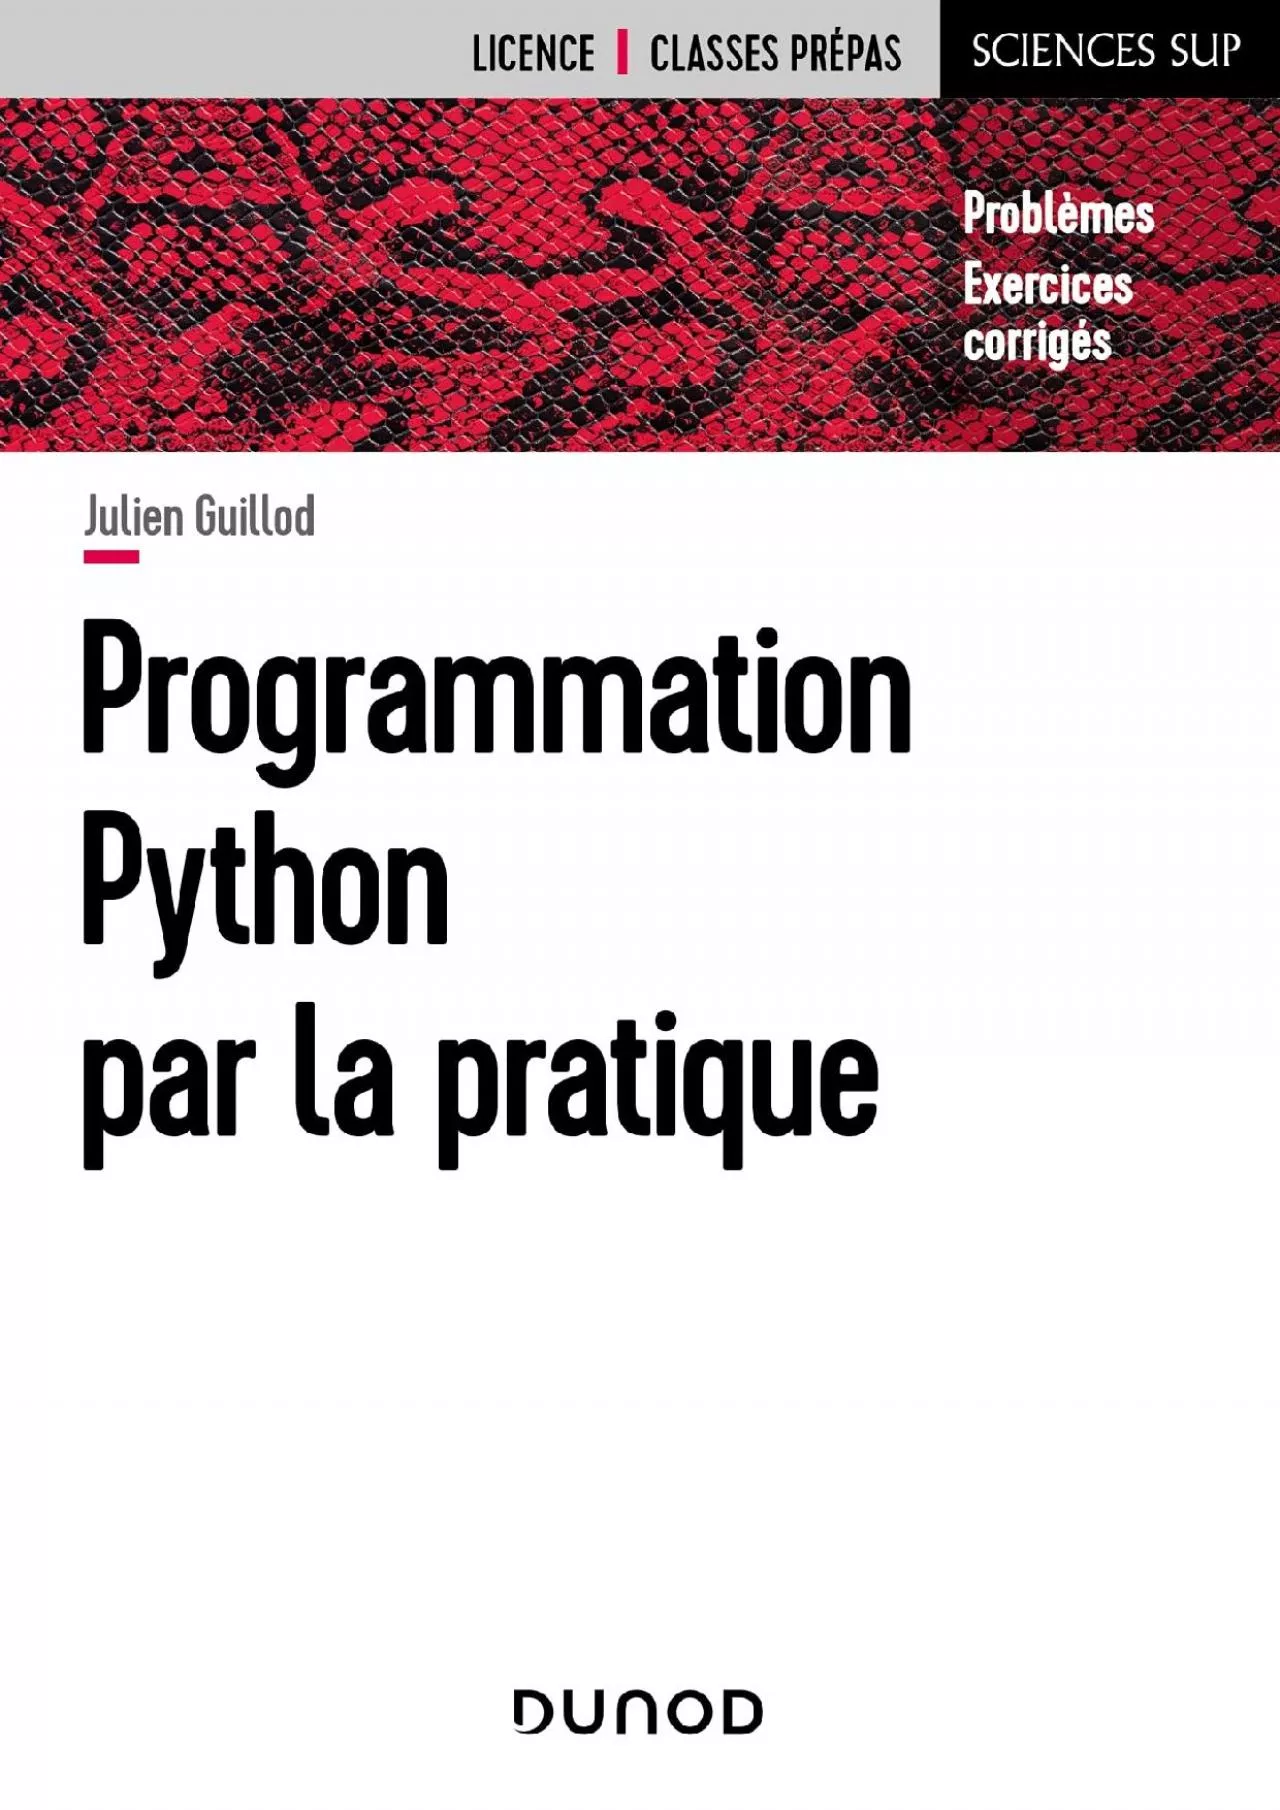 [READING BOOK]-Programmation Python par la pratique - Problèmes et exercices corrigés: